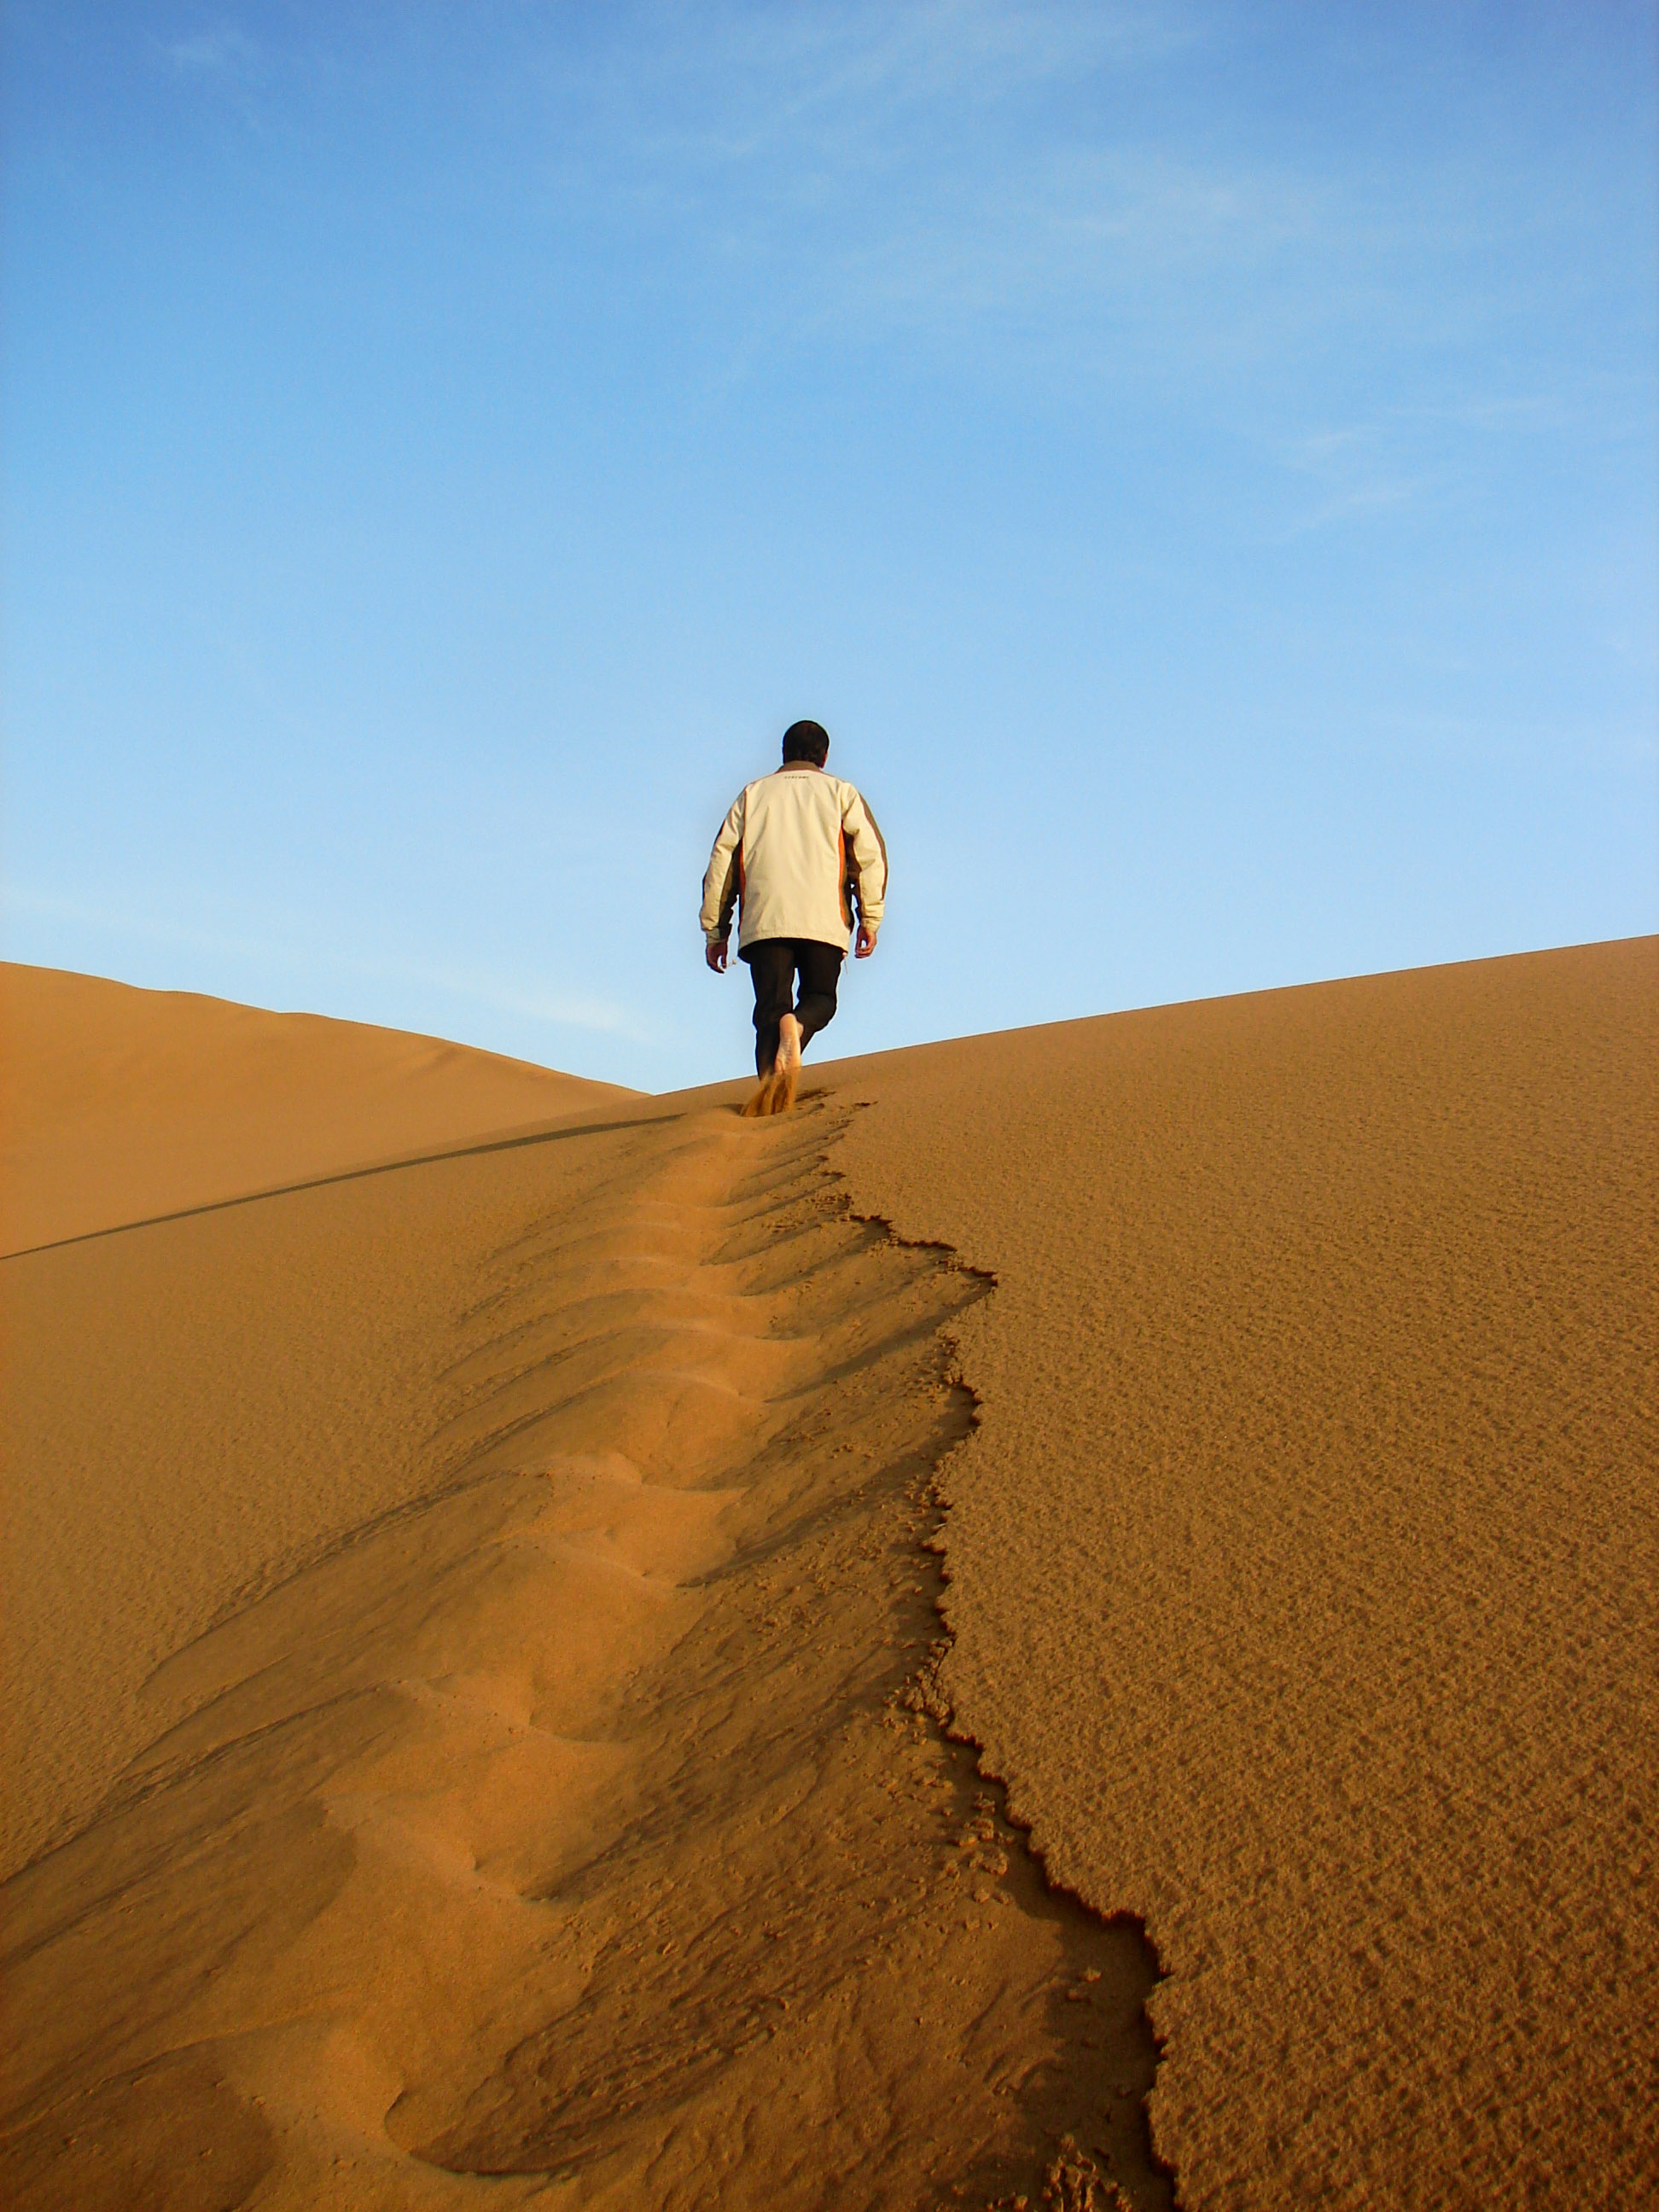 Медленно брел. Пустыня. Идущие по пустыне. Человек идет по пустыне. Человек один в пустыне.